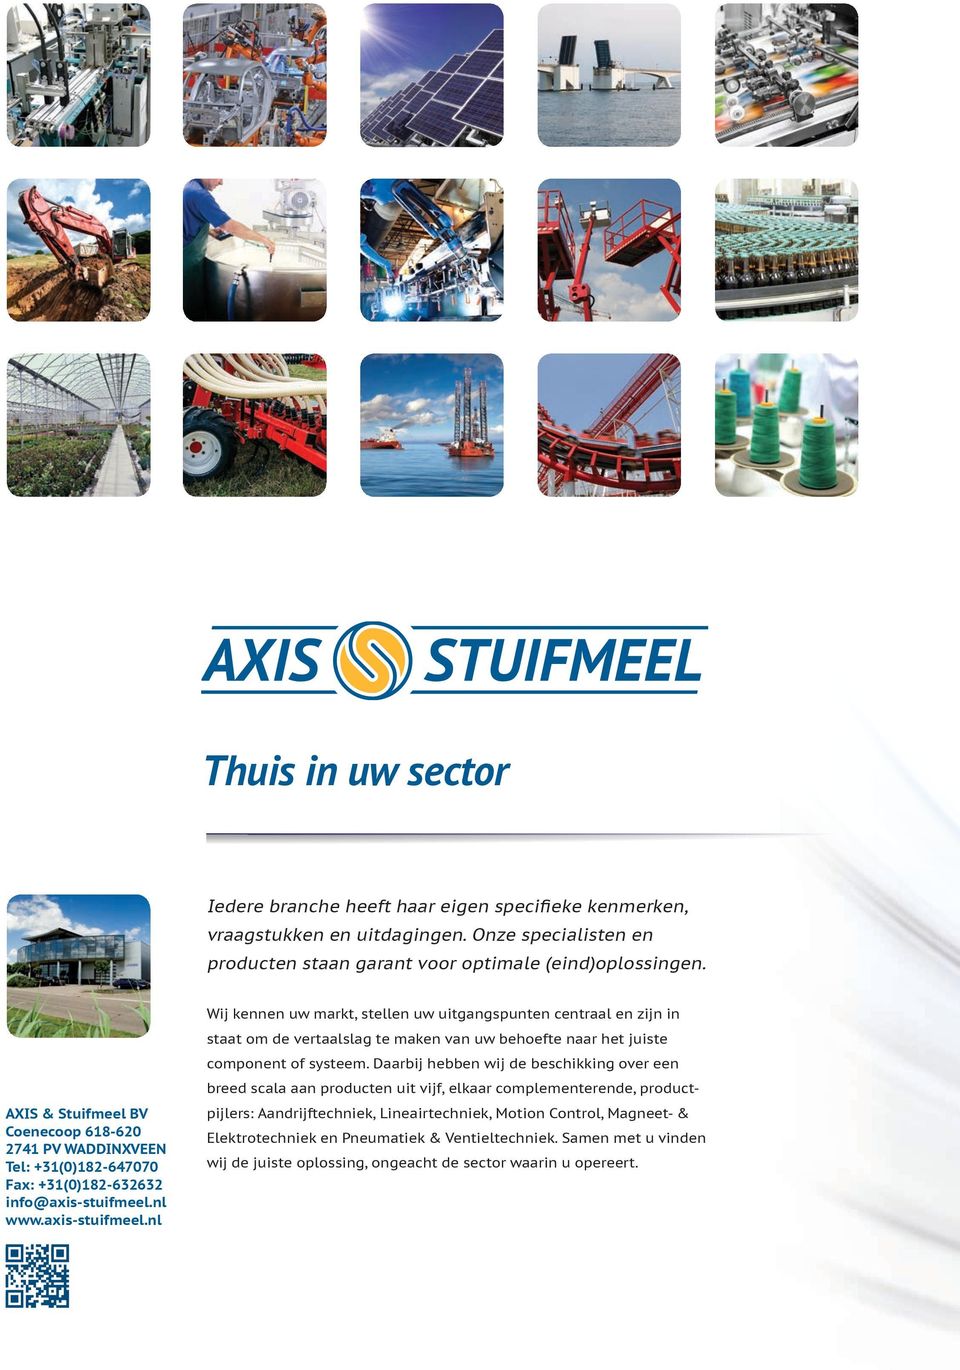 nl www.axis-stuifmeel.nl Wij kennen uw markt, stellen uw uitgangspunten centraal en zijn in staat om de vertaalslag te maken van uw behoefte naar het juiste component of systeem.